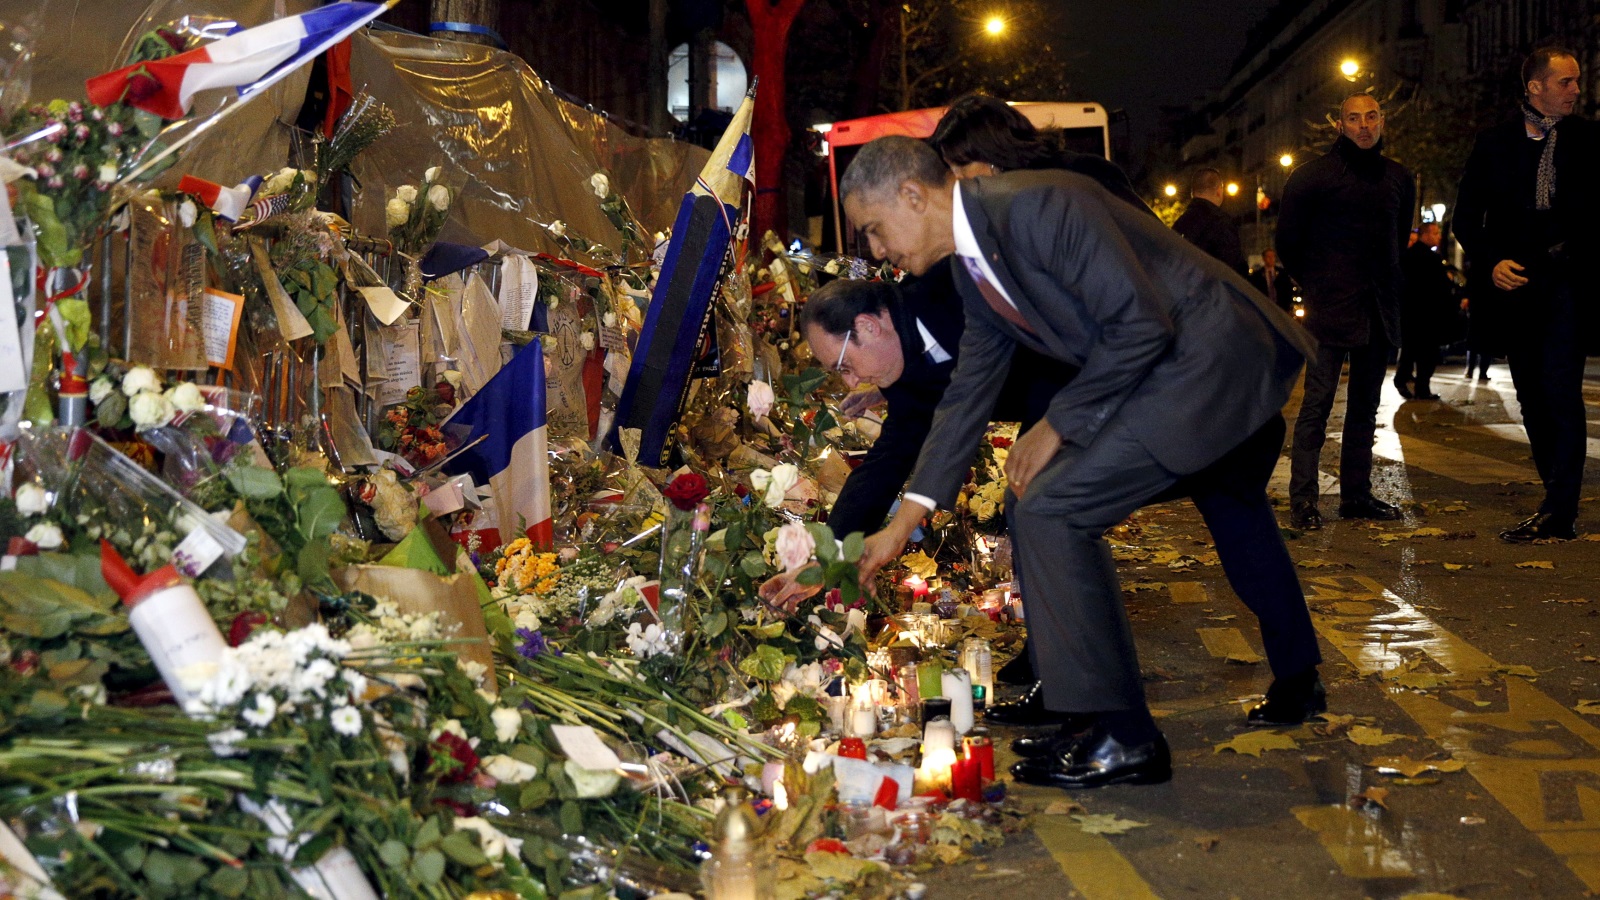  الرئيس الفرنسي السابق هولاند والرئيس الأميركي السابق أوباما يضعان الزهور لضحايا هجمات باريس في نوفمبر 2015 (رويترز)